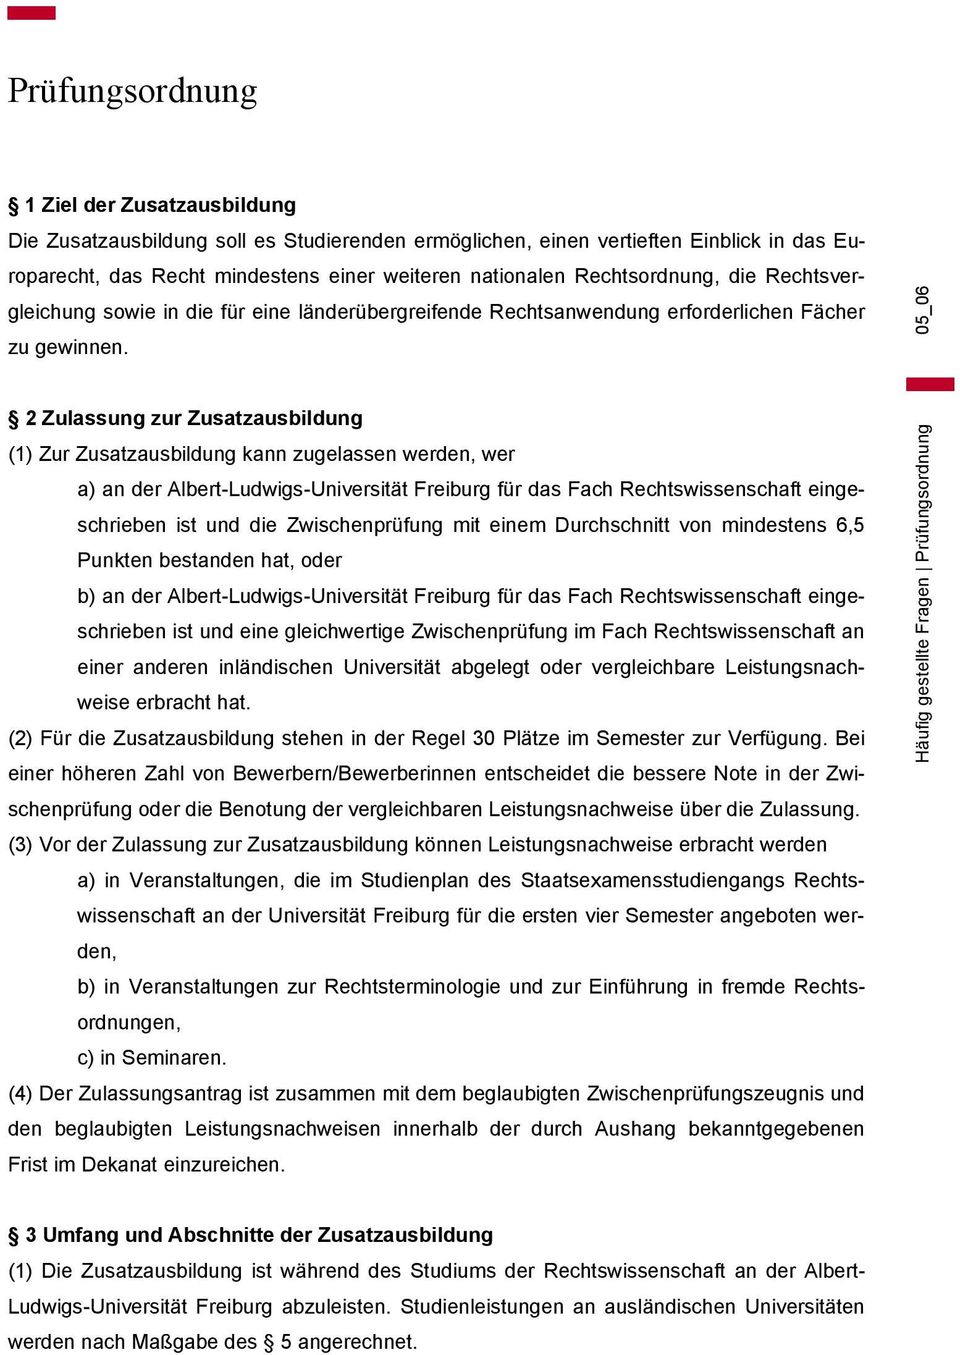 05_06 2 Zulassung zur Zusatzausbildung (1) Zur Zusatzausbildung kann zugelassen werden, wer a) an der Albert-Ludwigs-Universität Freiburg für das Fach Rechtswissenschaft eingeschrieben ist und die